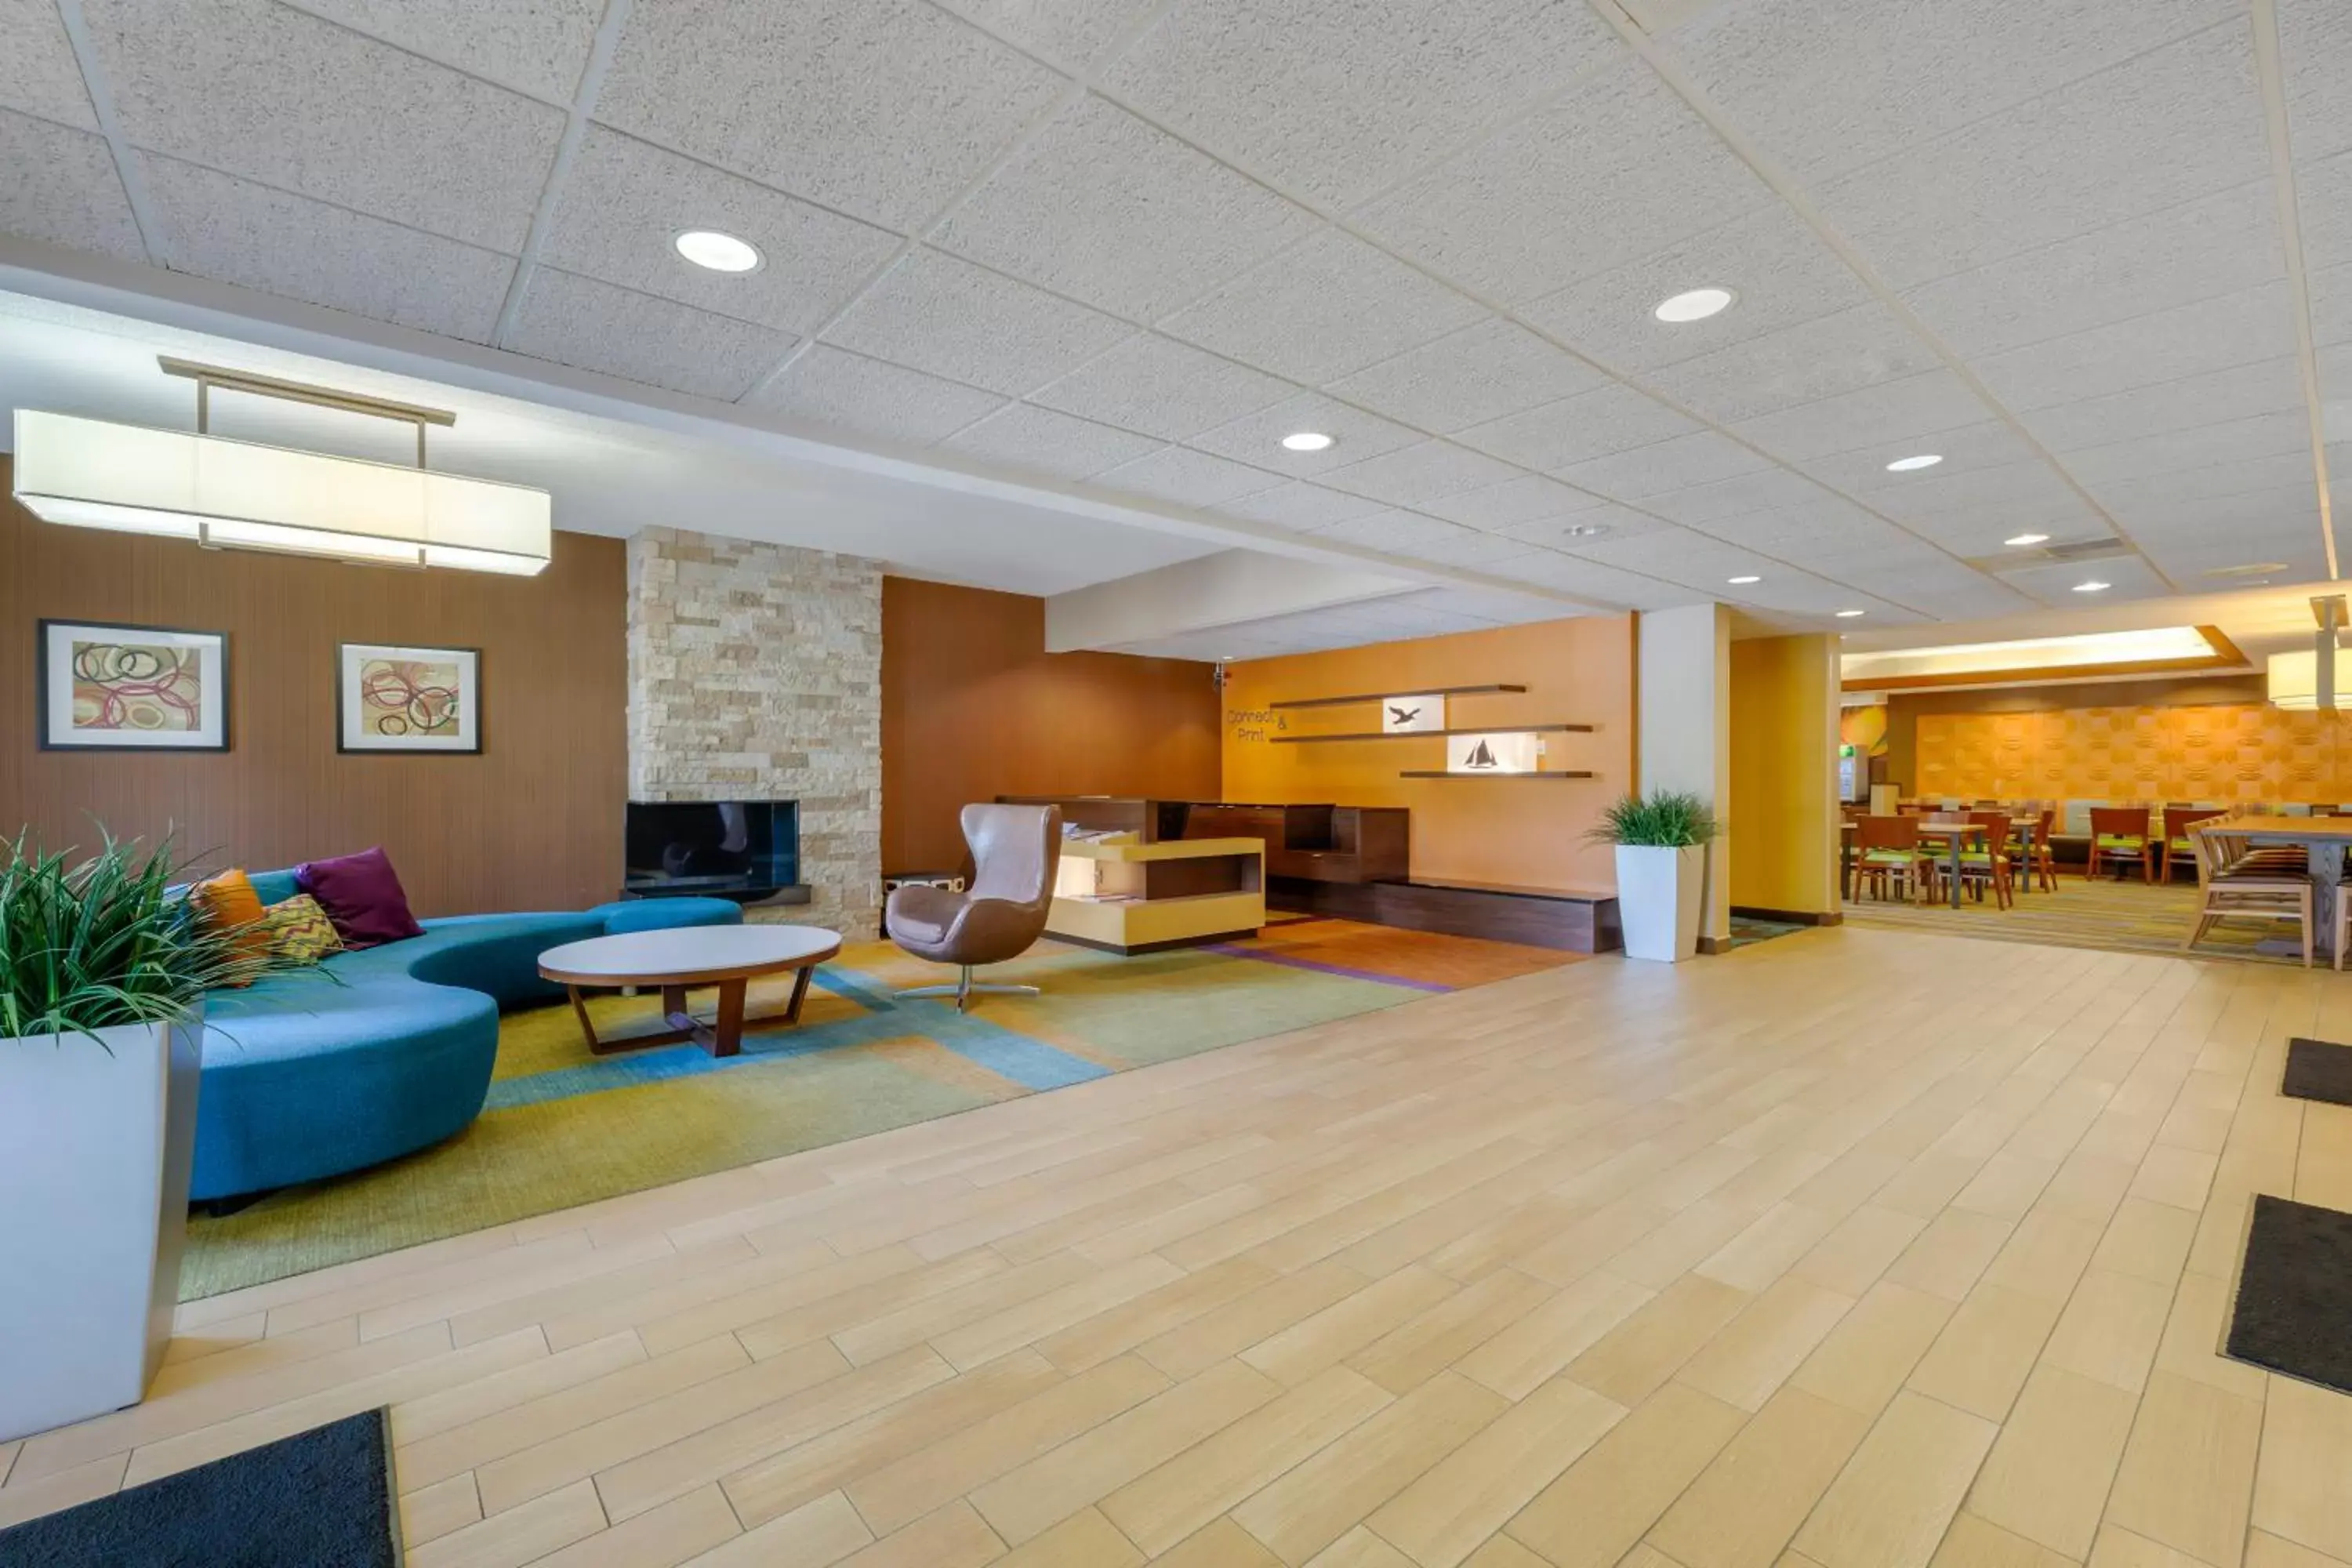 Lobby or reception, Lobby/Reception in Quality Inn & Suites Sandusky